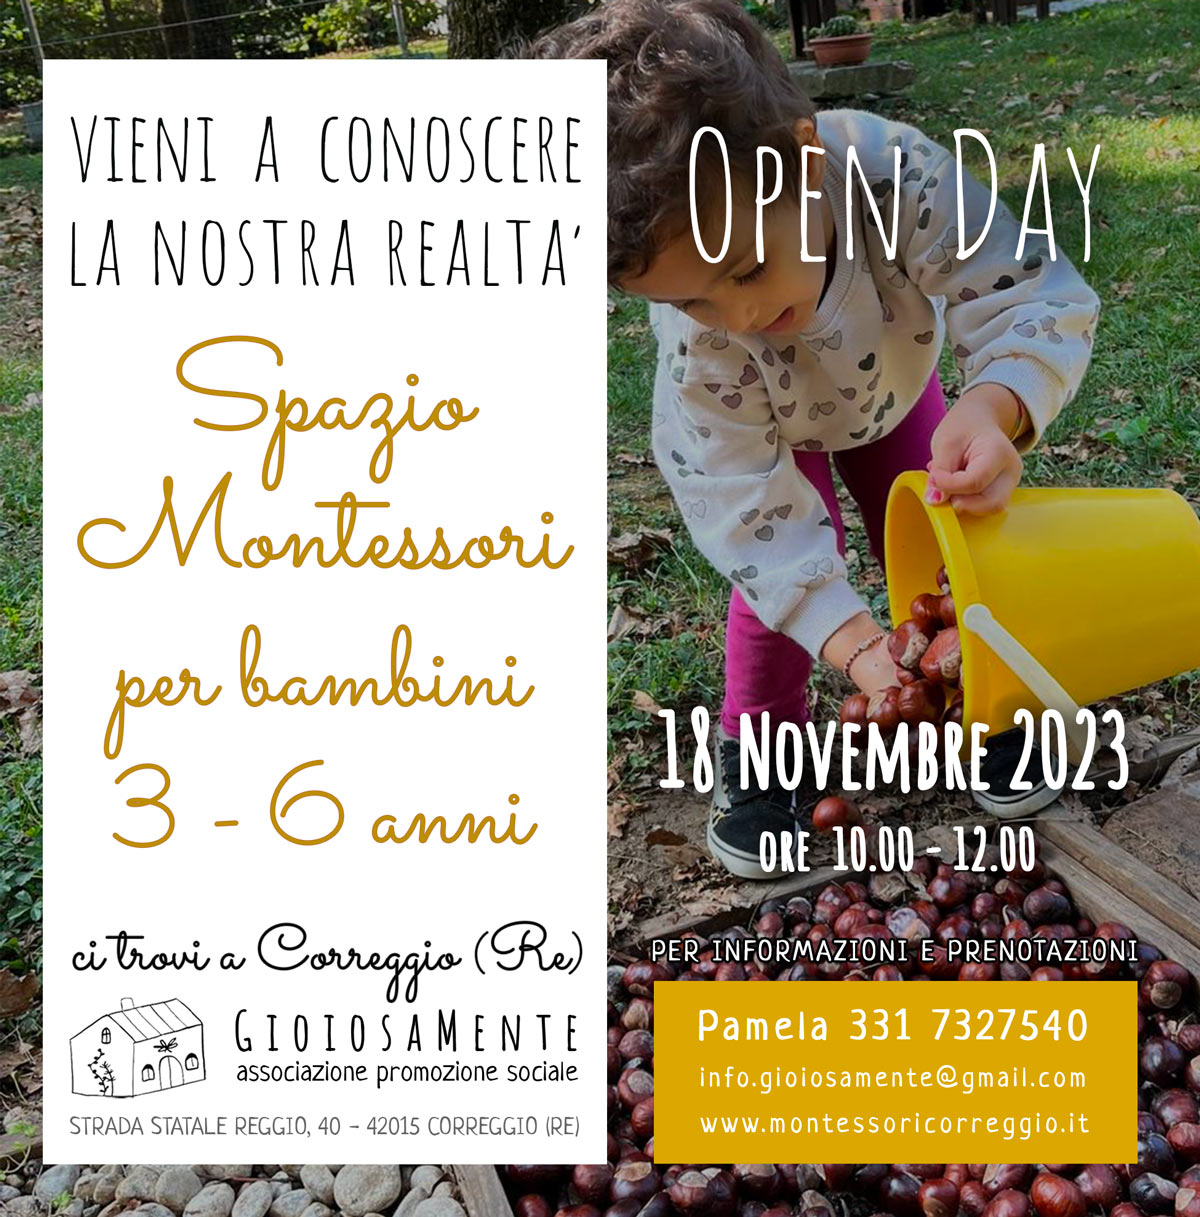 Open Day correggio (RE) Spazio montessori